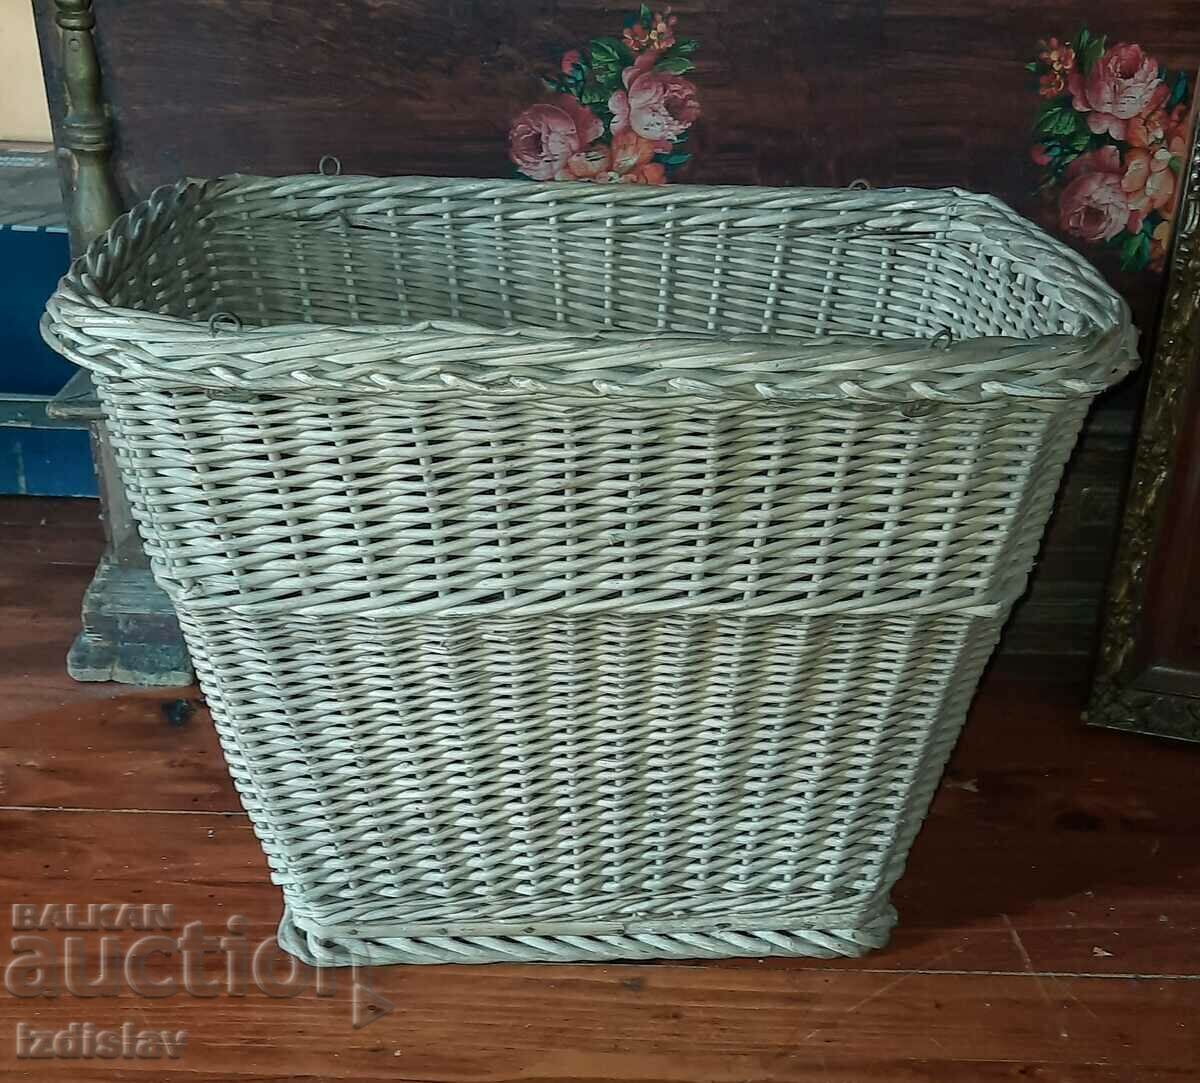 Vintage hand woven back basket